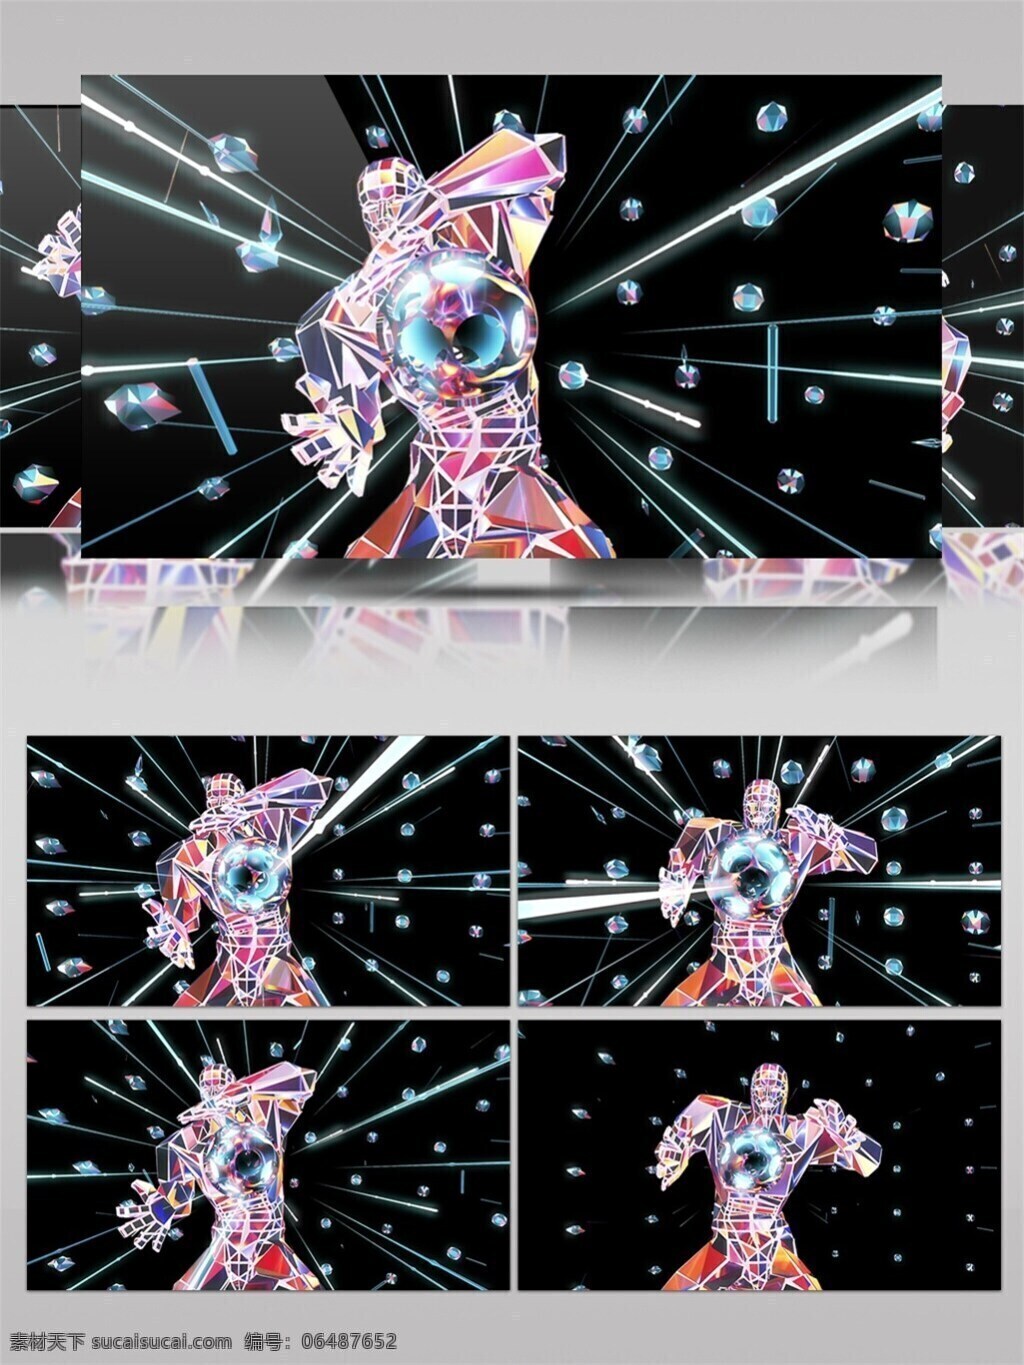 彩色 水晶 机器人 高清 视频 光斑散射 机器 机械 视觉享受 手机壁纸